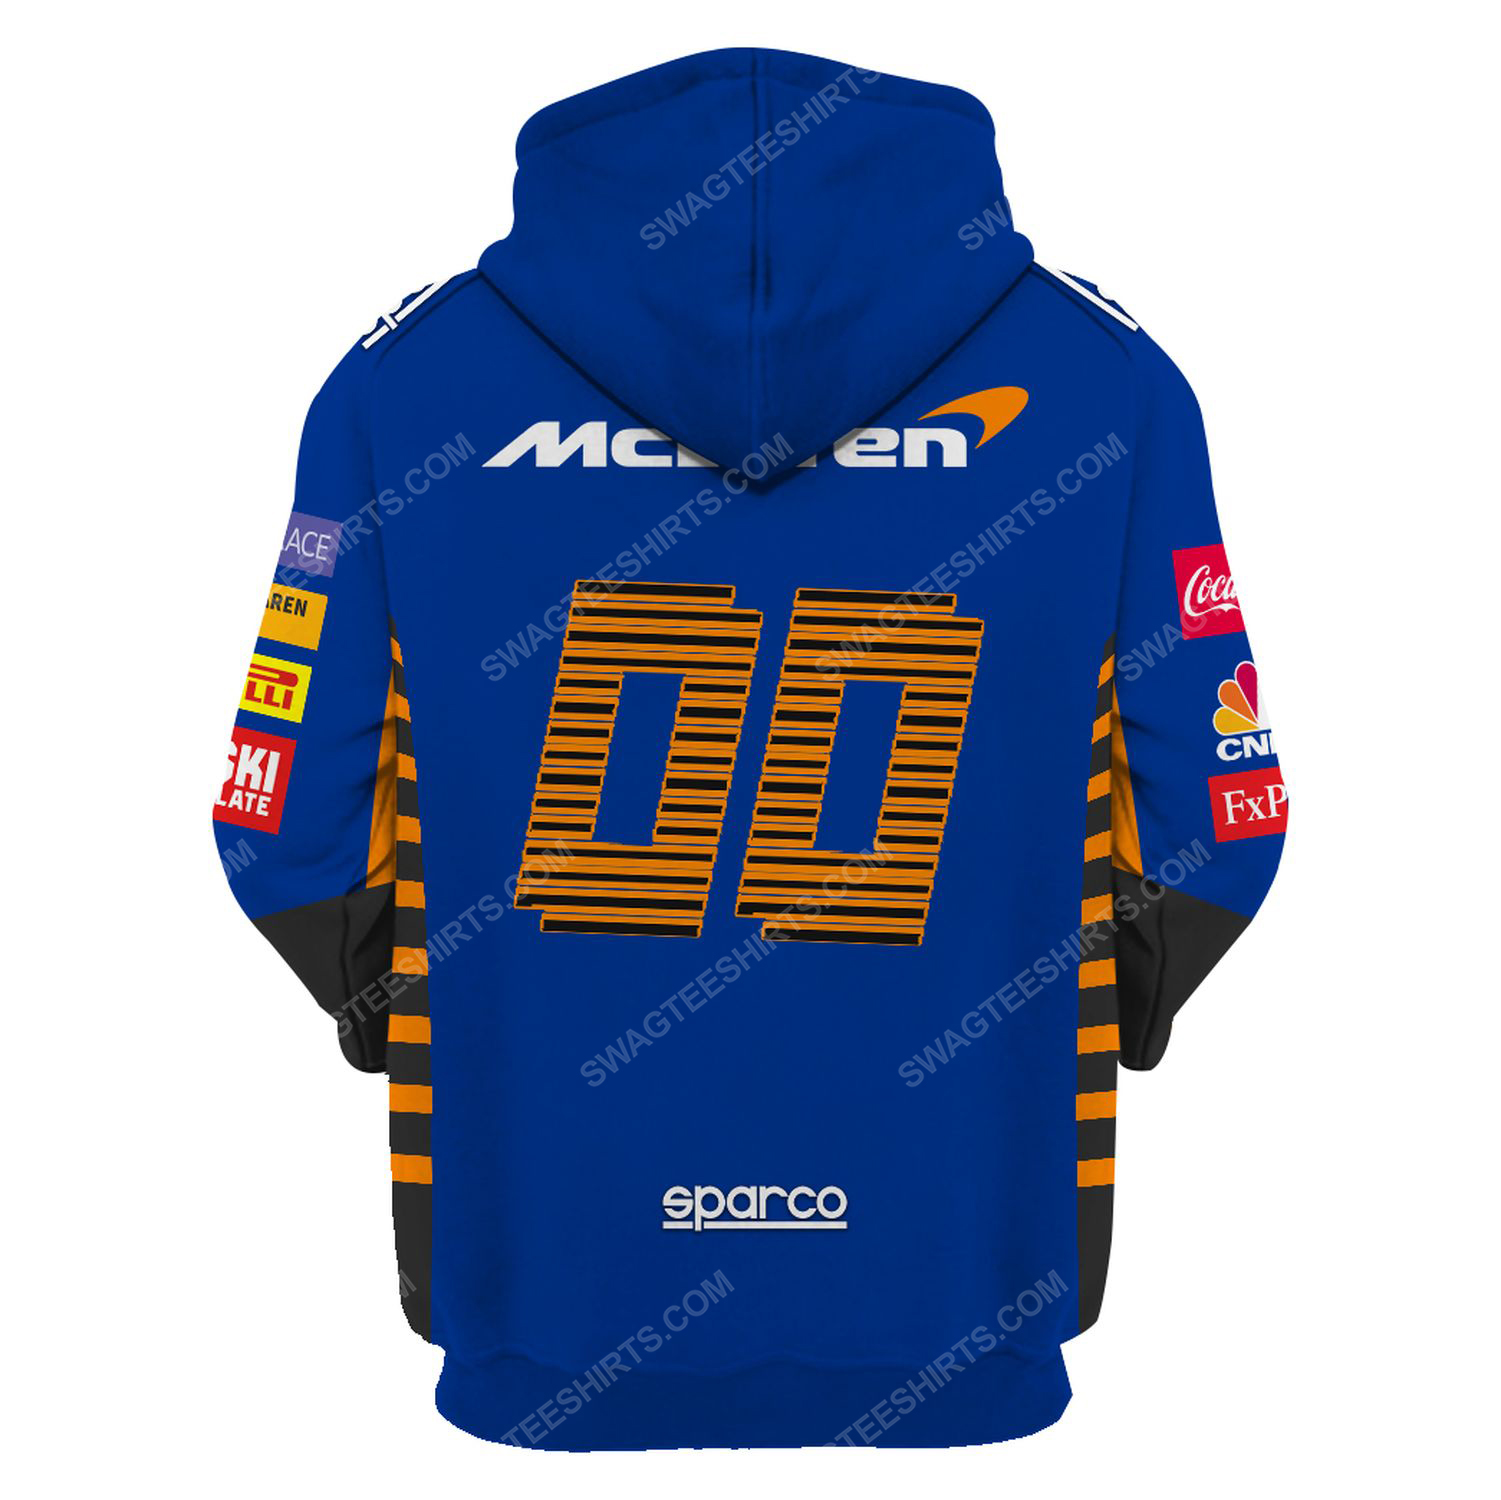 Dell technologies racing team motorsport full printing hoodie - back